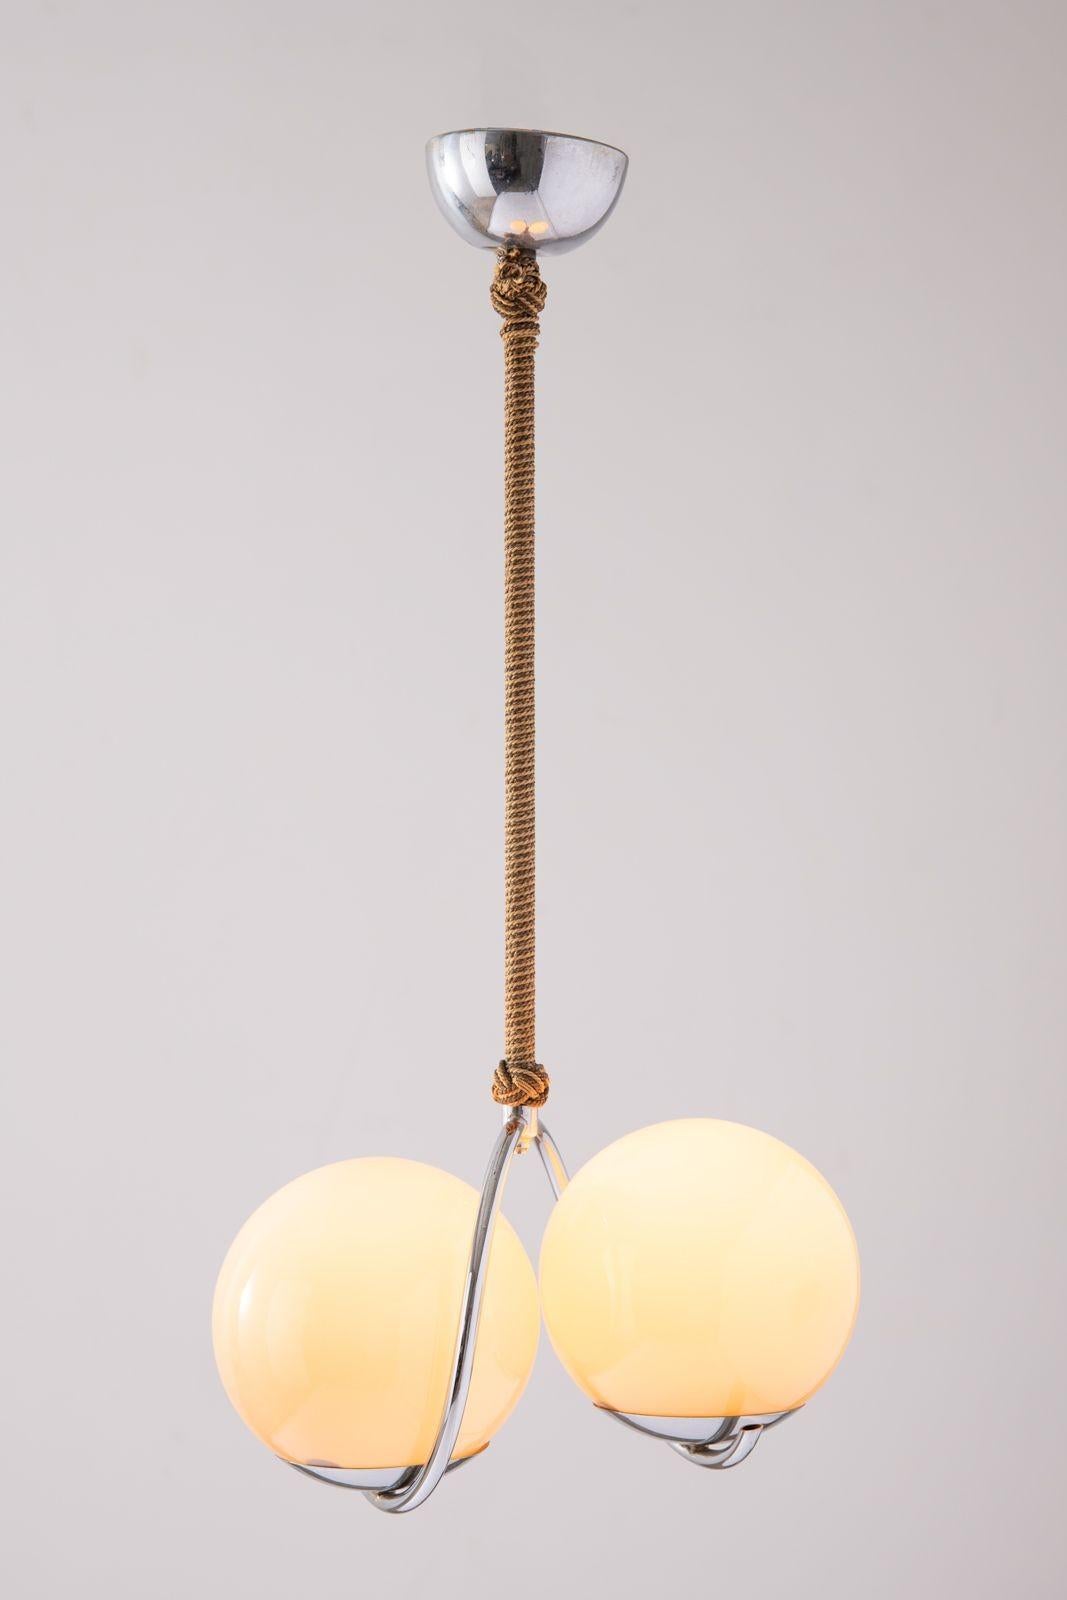 Cette élégante lampe suspendue est très sensuelle et agréable à regarder.
Il a été acheté lors d'un voyage au Danemark dans les années 1960 et est fabriqué avec des matériaux de la plus haute qualité. La lampe a été très bien conservée. Grâce à la